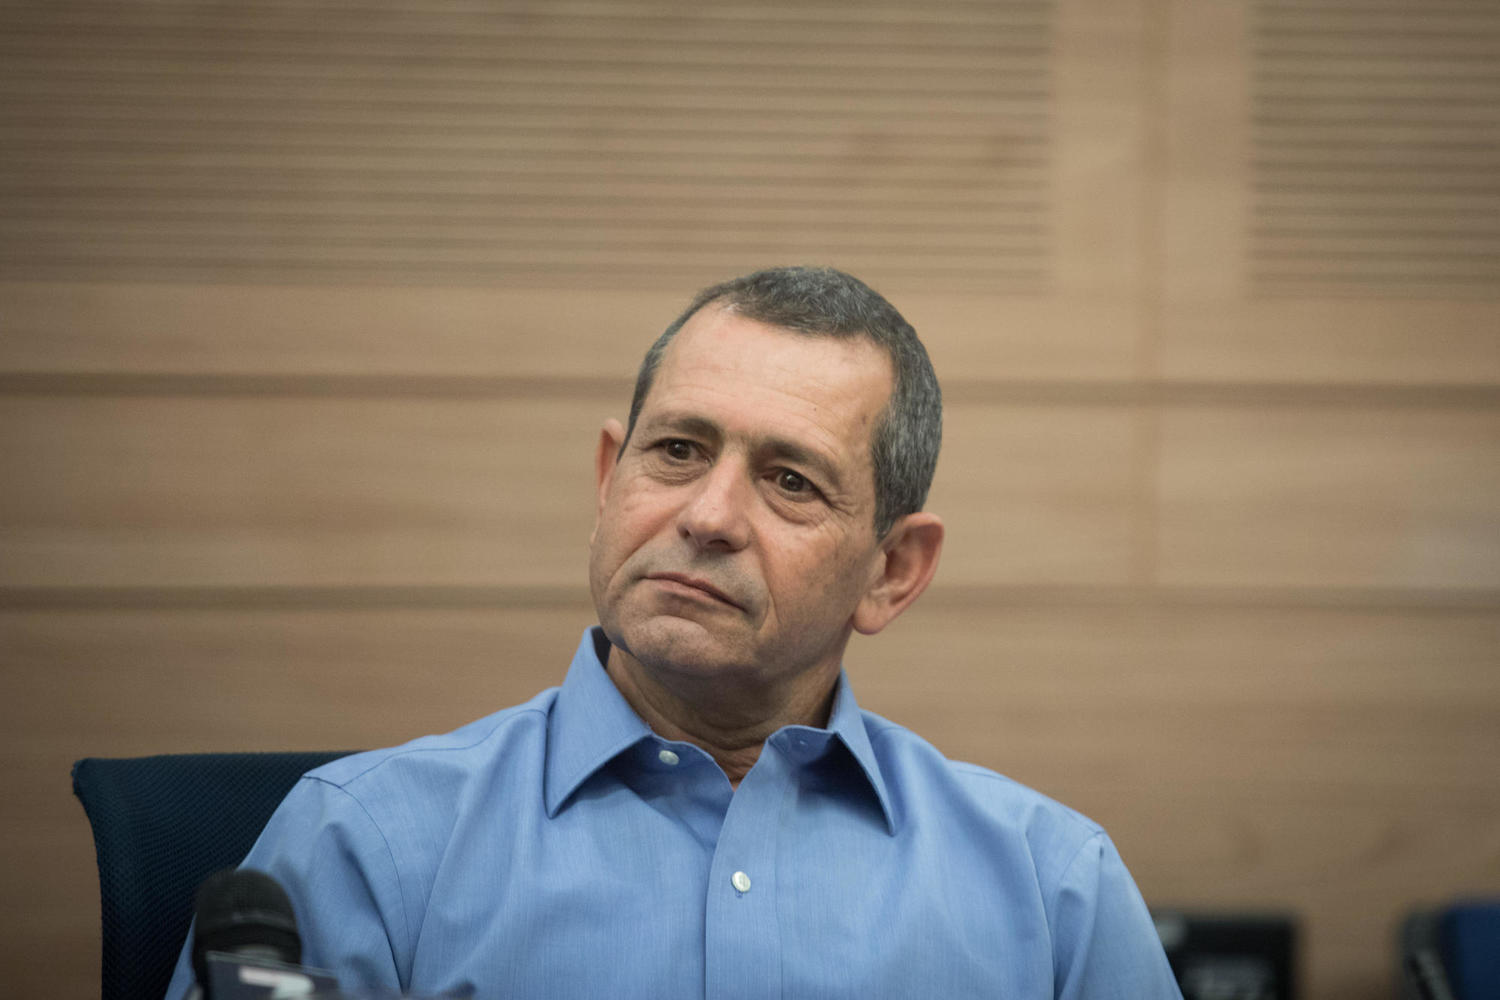 ШАБАК задержал гражданина Израиля по подозрению в тяжком преступлении против безопасности